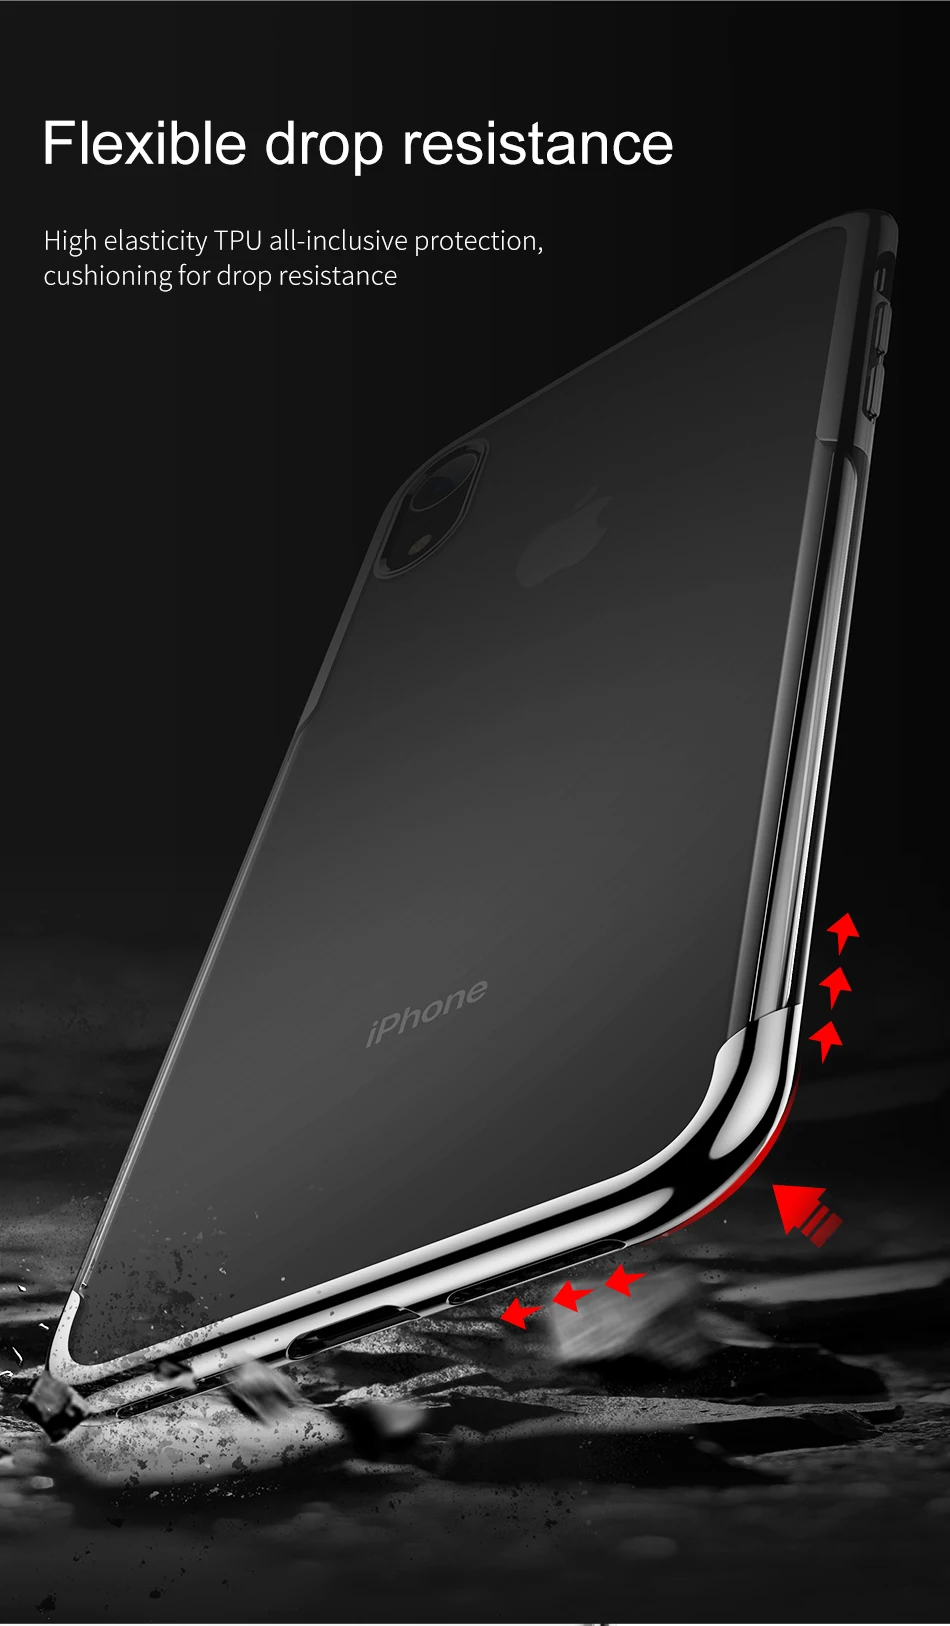 Чехол Baseus для iPhone XR Xs чехол Роскошный мягкий ТПУ чехол для телефона для iPhone XS XR XS Max Coque Funda задняя крышка прозрачный